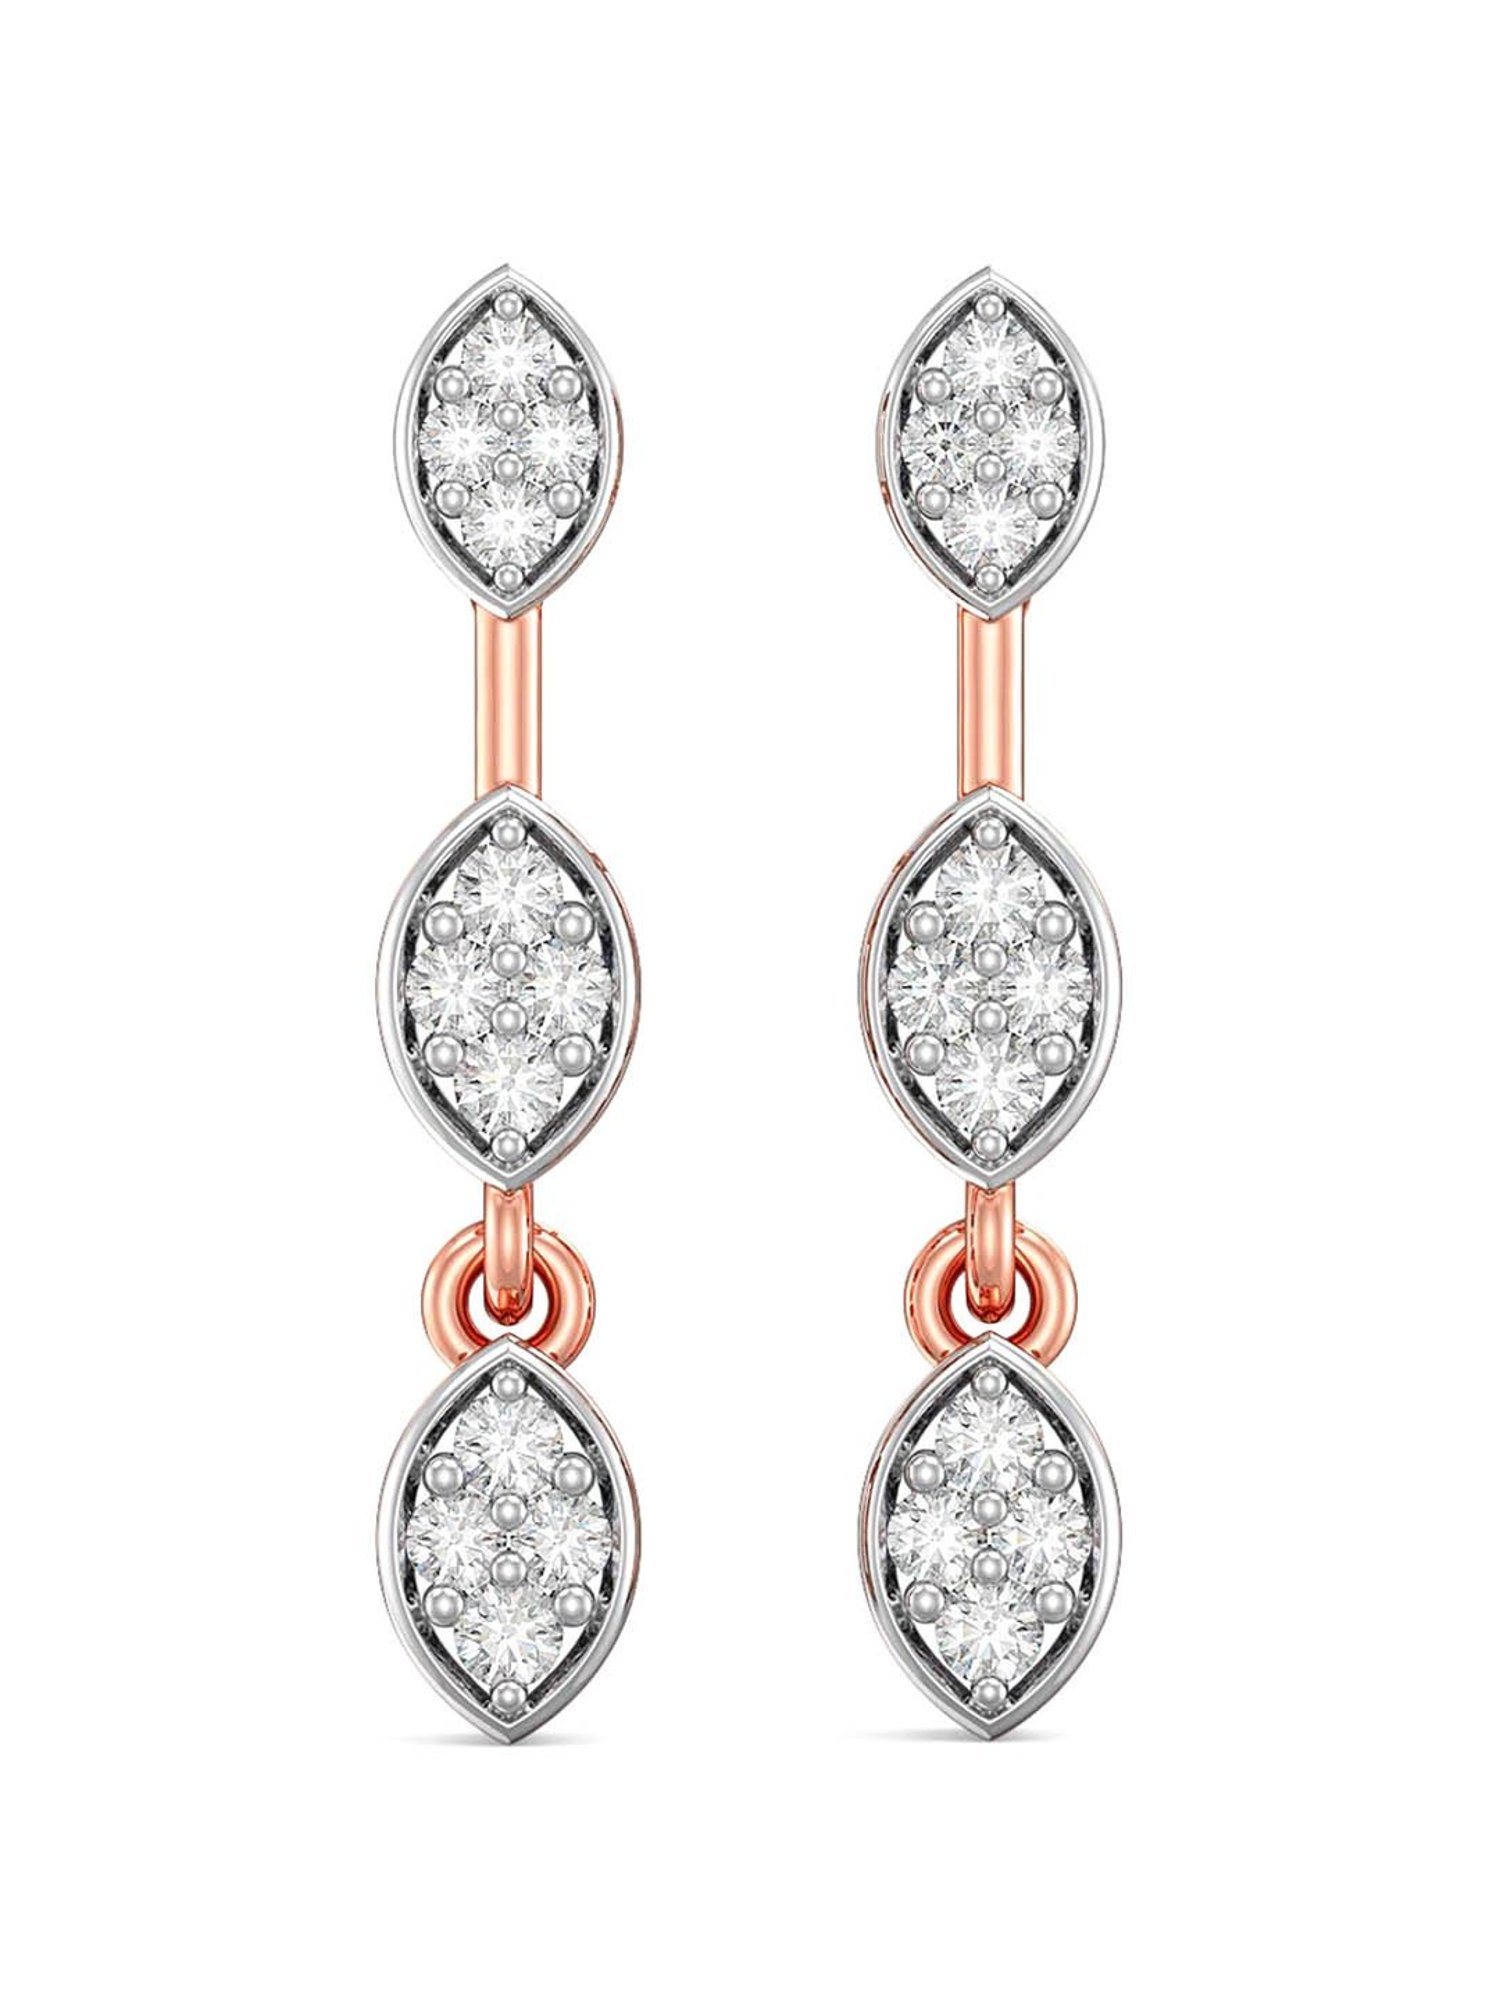 Buy Priyaasi Rose Gold-Plated American Diamond Studded Drop Earrings Online